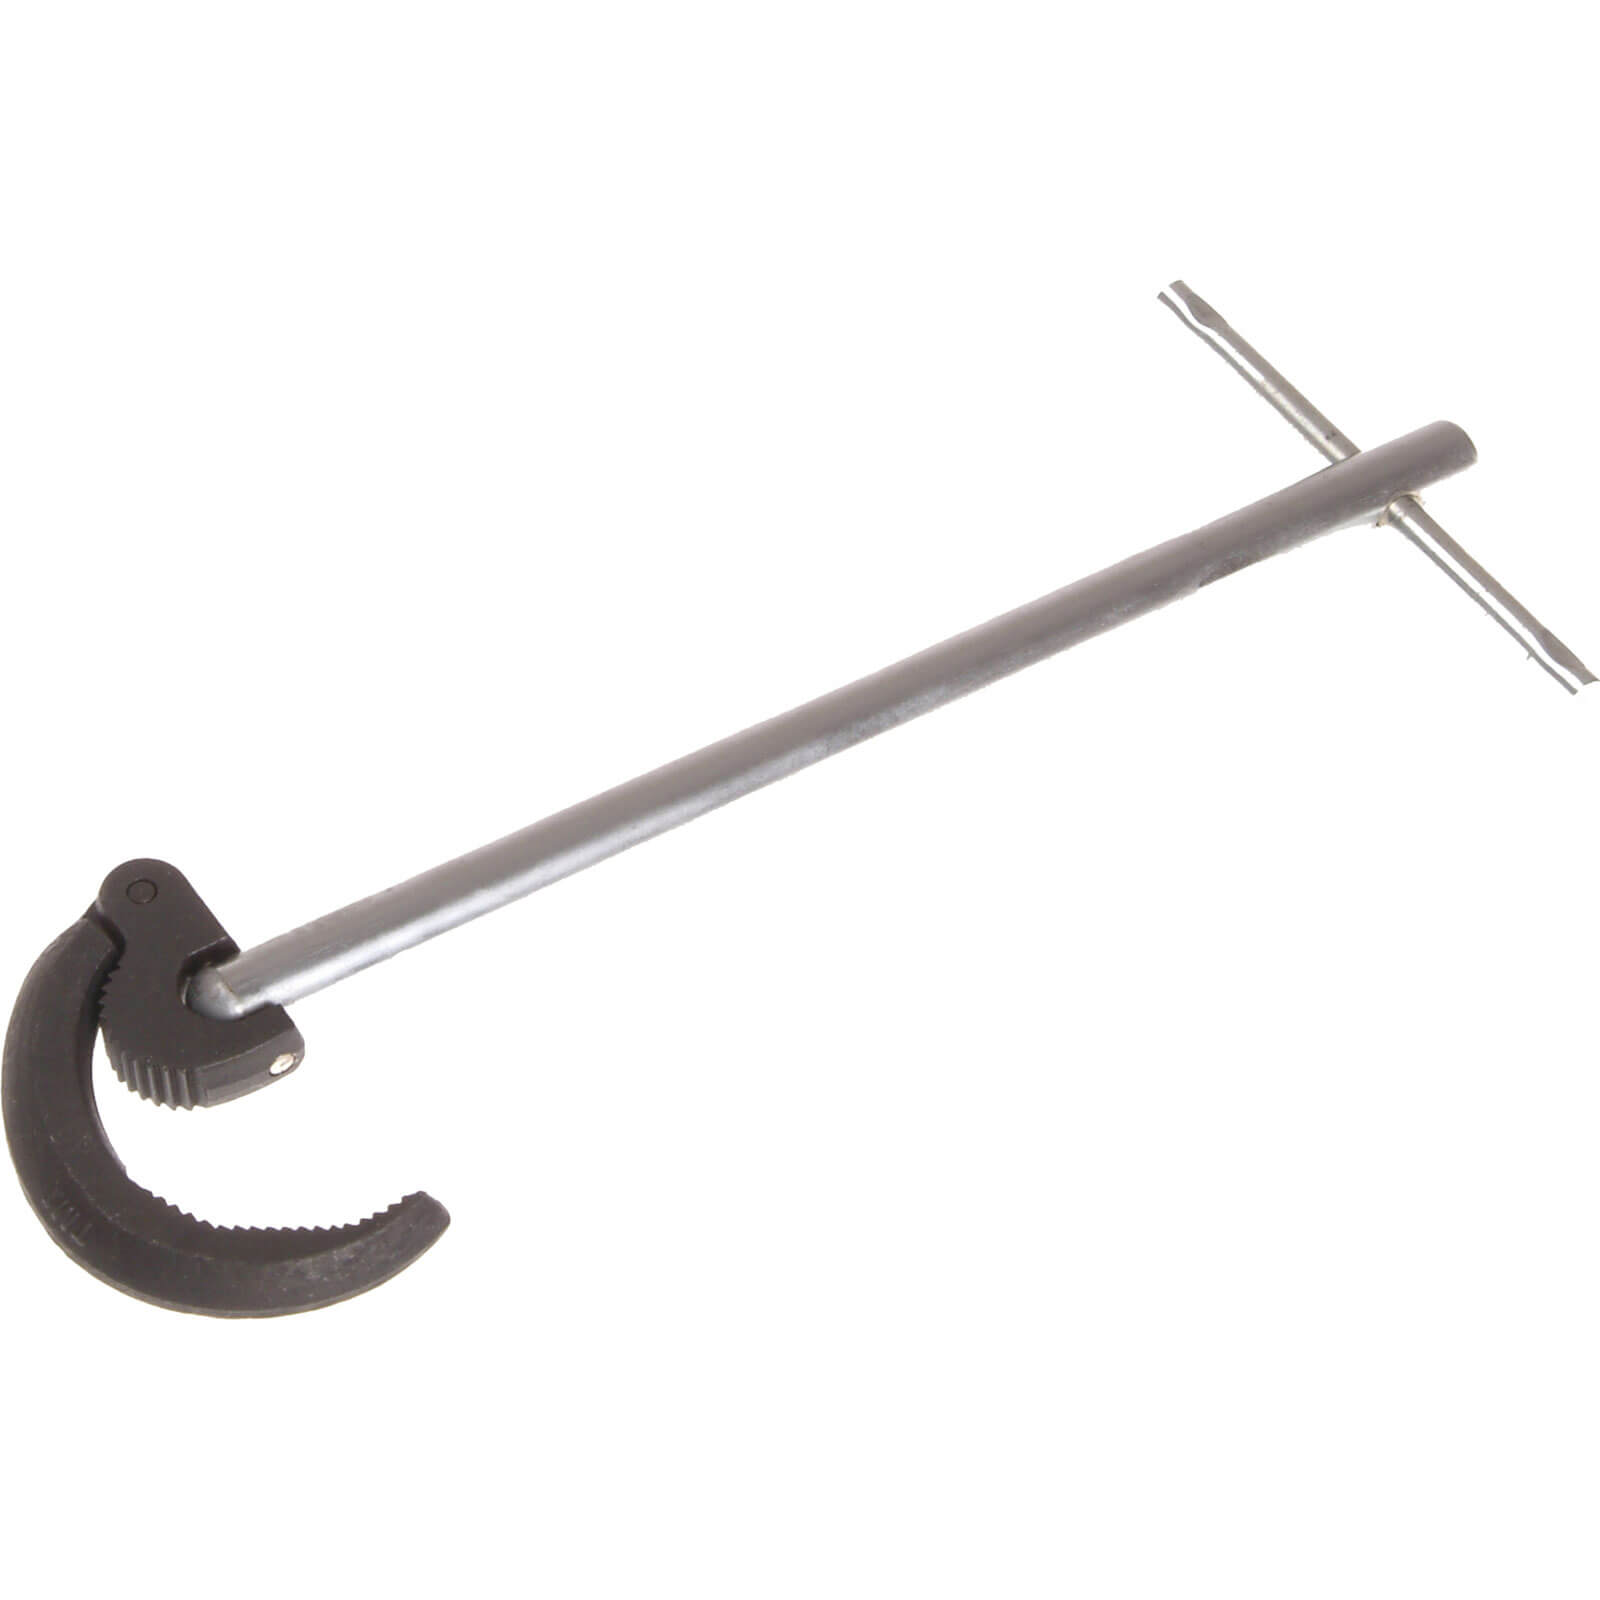 Image of Faithfull Large Adjustable Basin Wrench